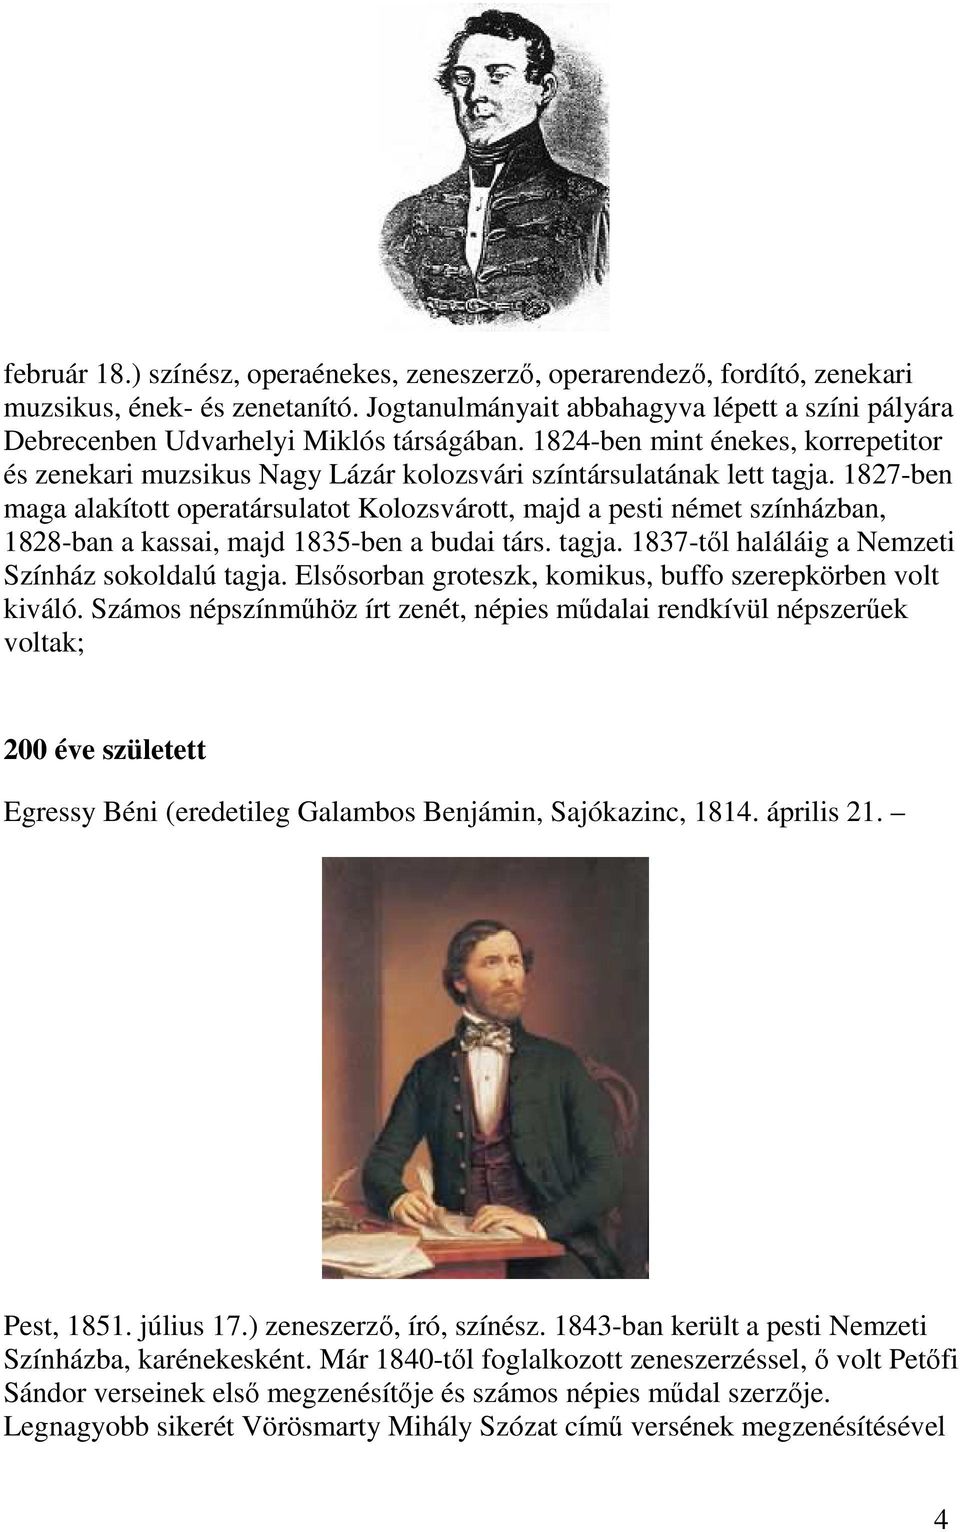 1827-ben maga alakított operatársulatot Kolozsvárott, majd a pesti német színházban, 1828-ban a kassai, majd 1835-ben a budai társ. tagja. 1837-től haláláig a Nemzeti Színház sokoldalú tagja.